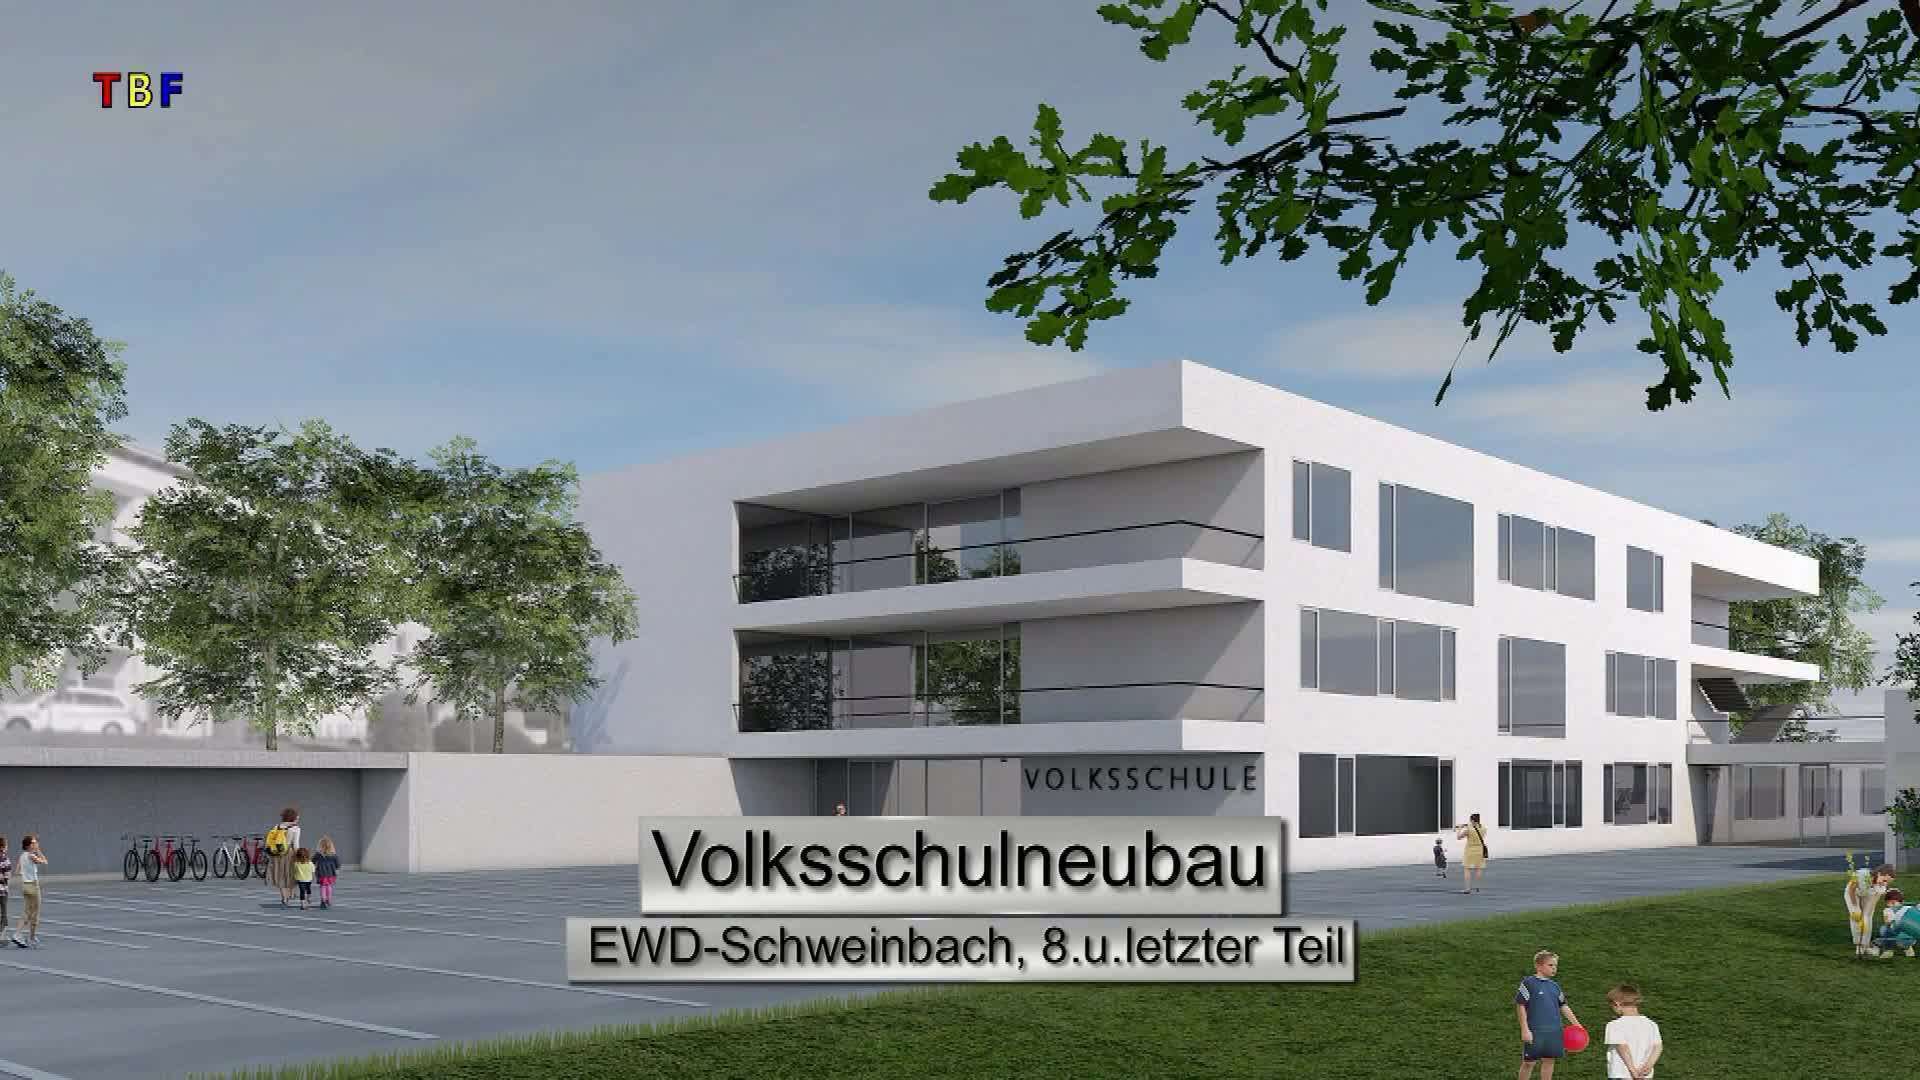 Volksschulneubau EWD-Schweinbach 8.u.letzter Teil